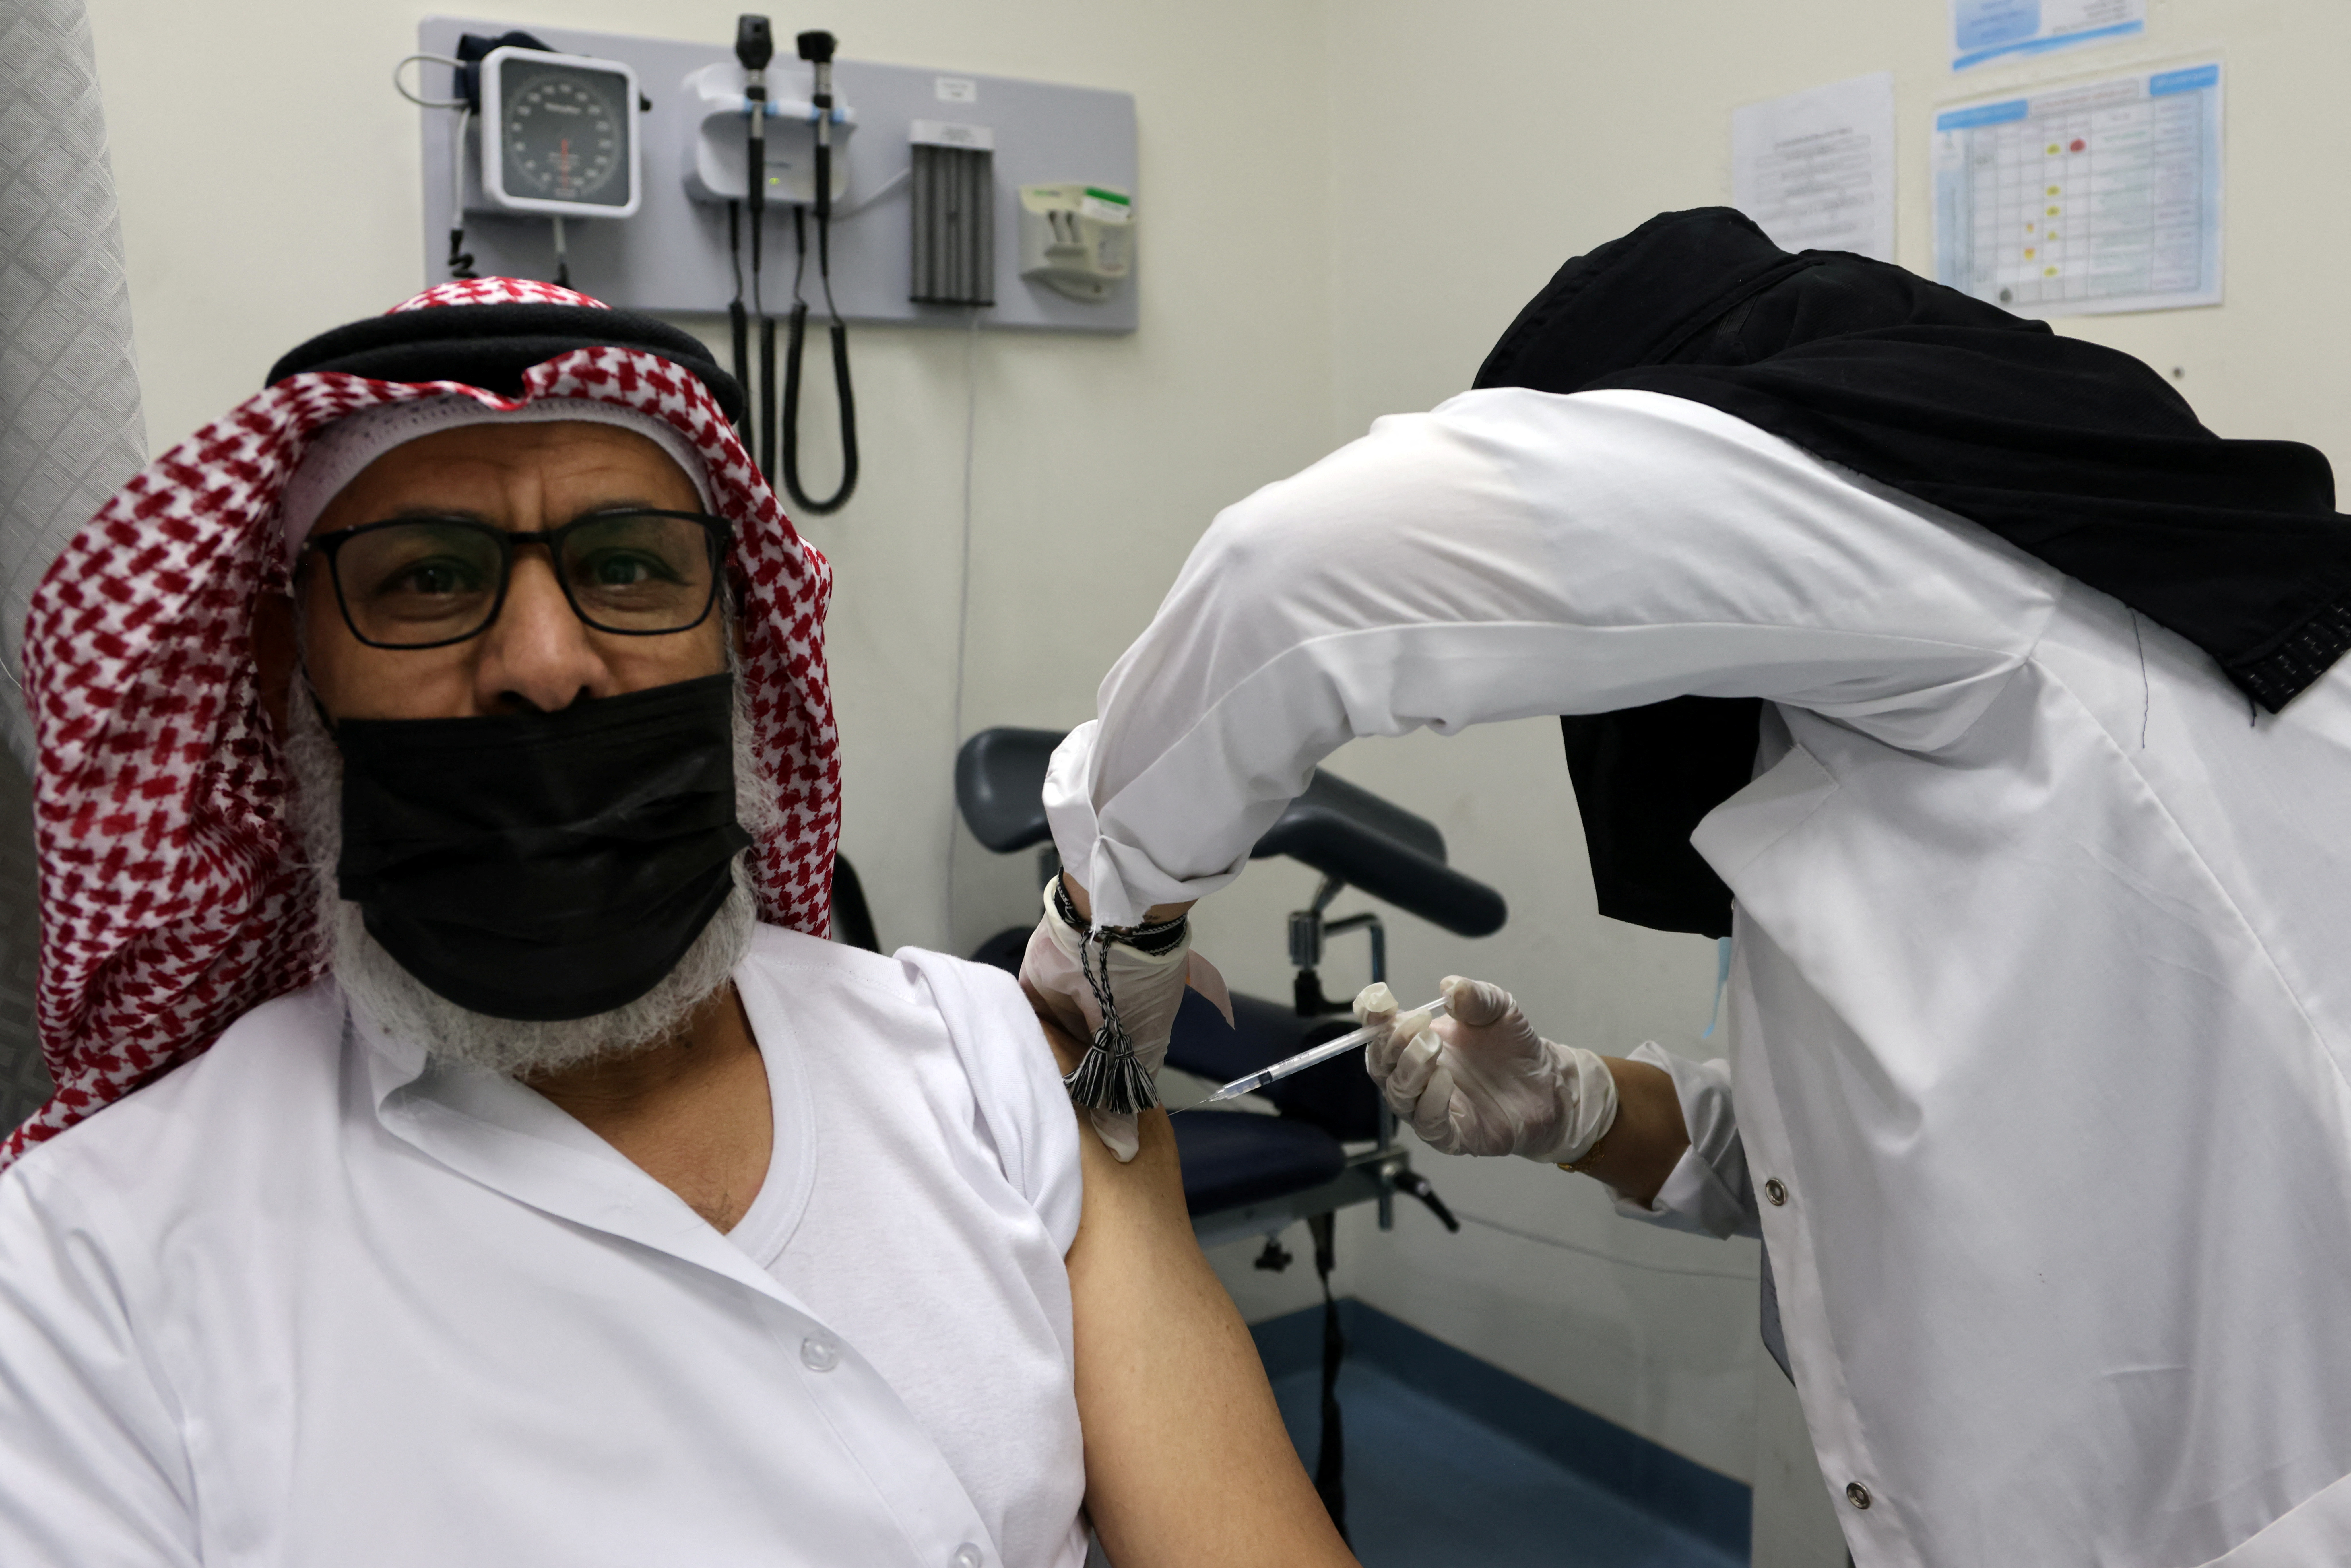 A Saudi man receives a vaccine against COVID-19 at Prince Sultan Complex Health Center in Riyadh